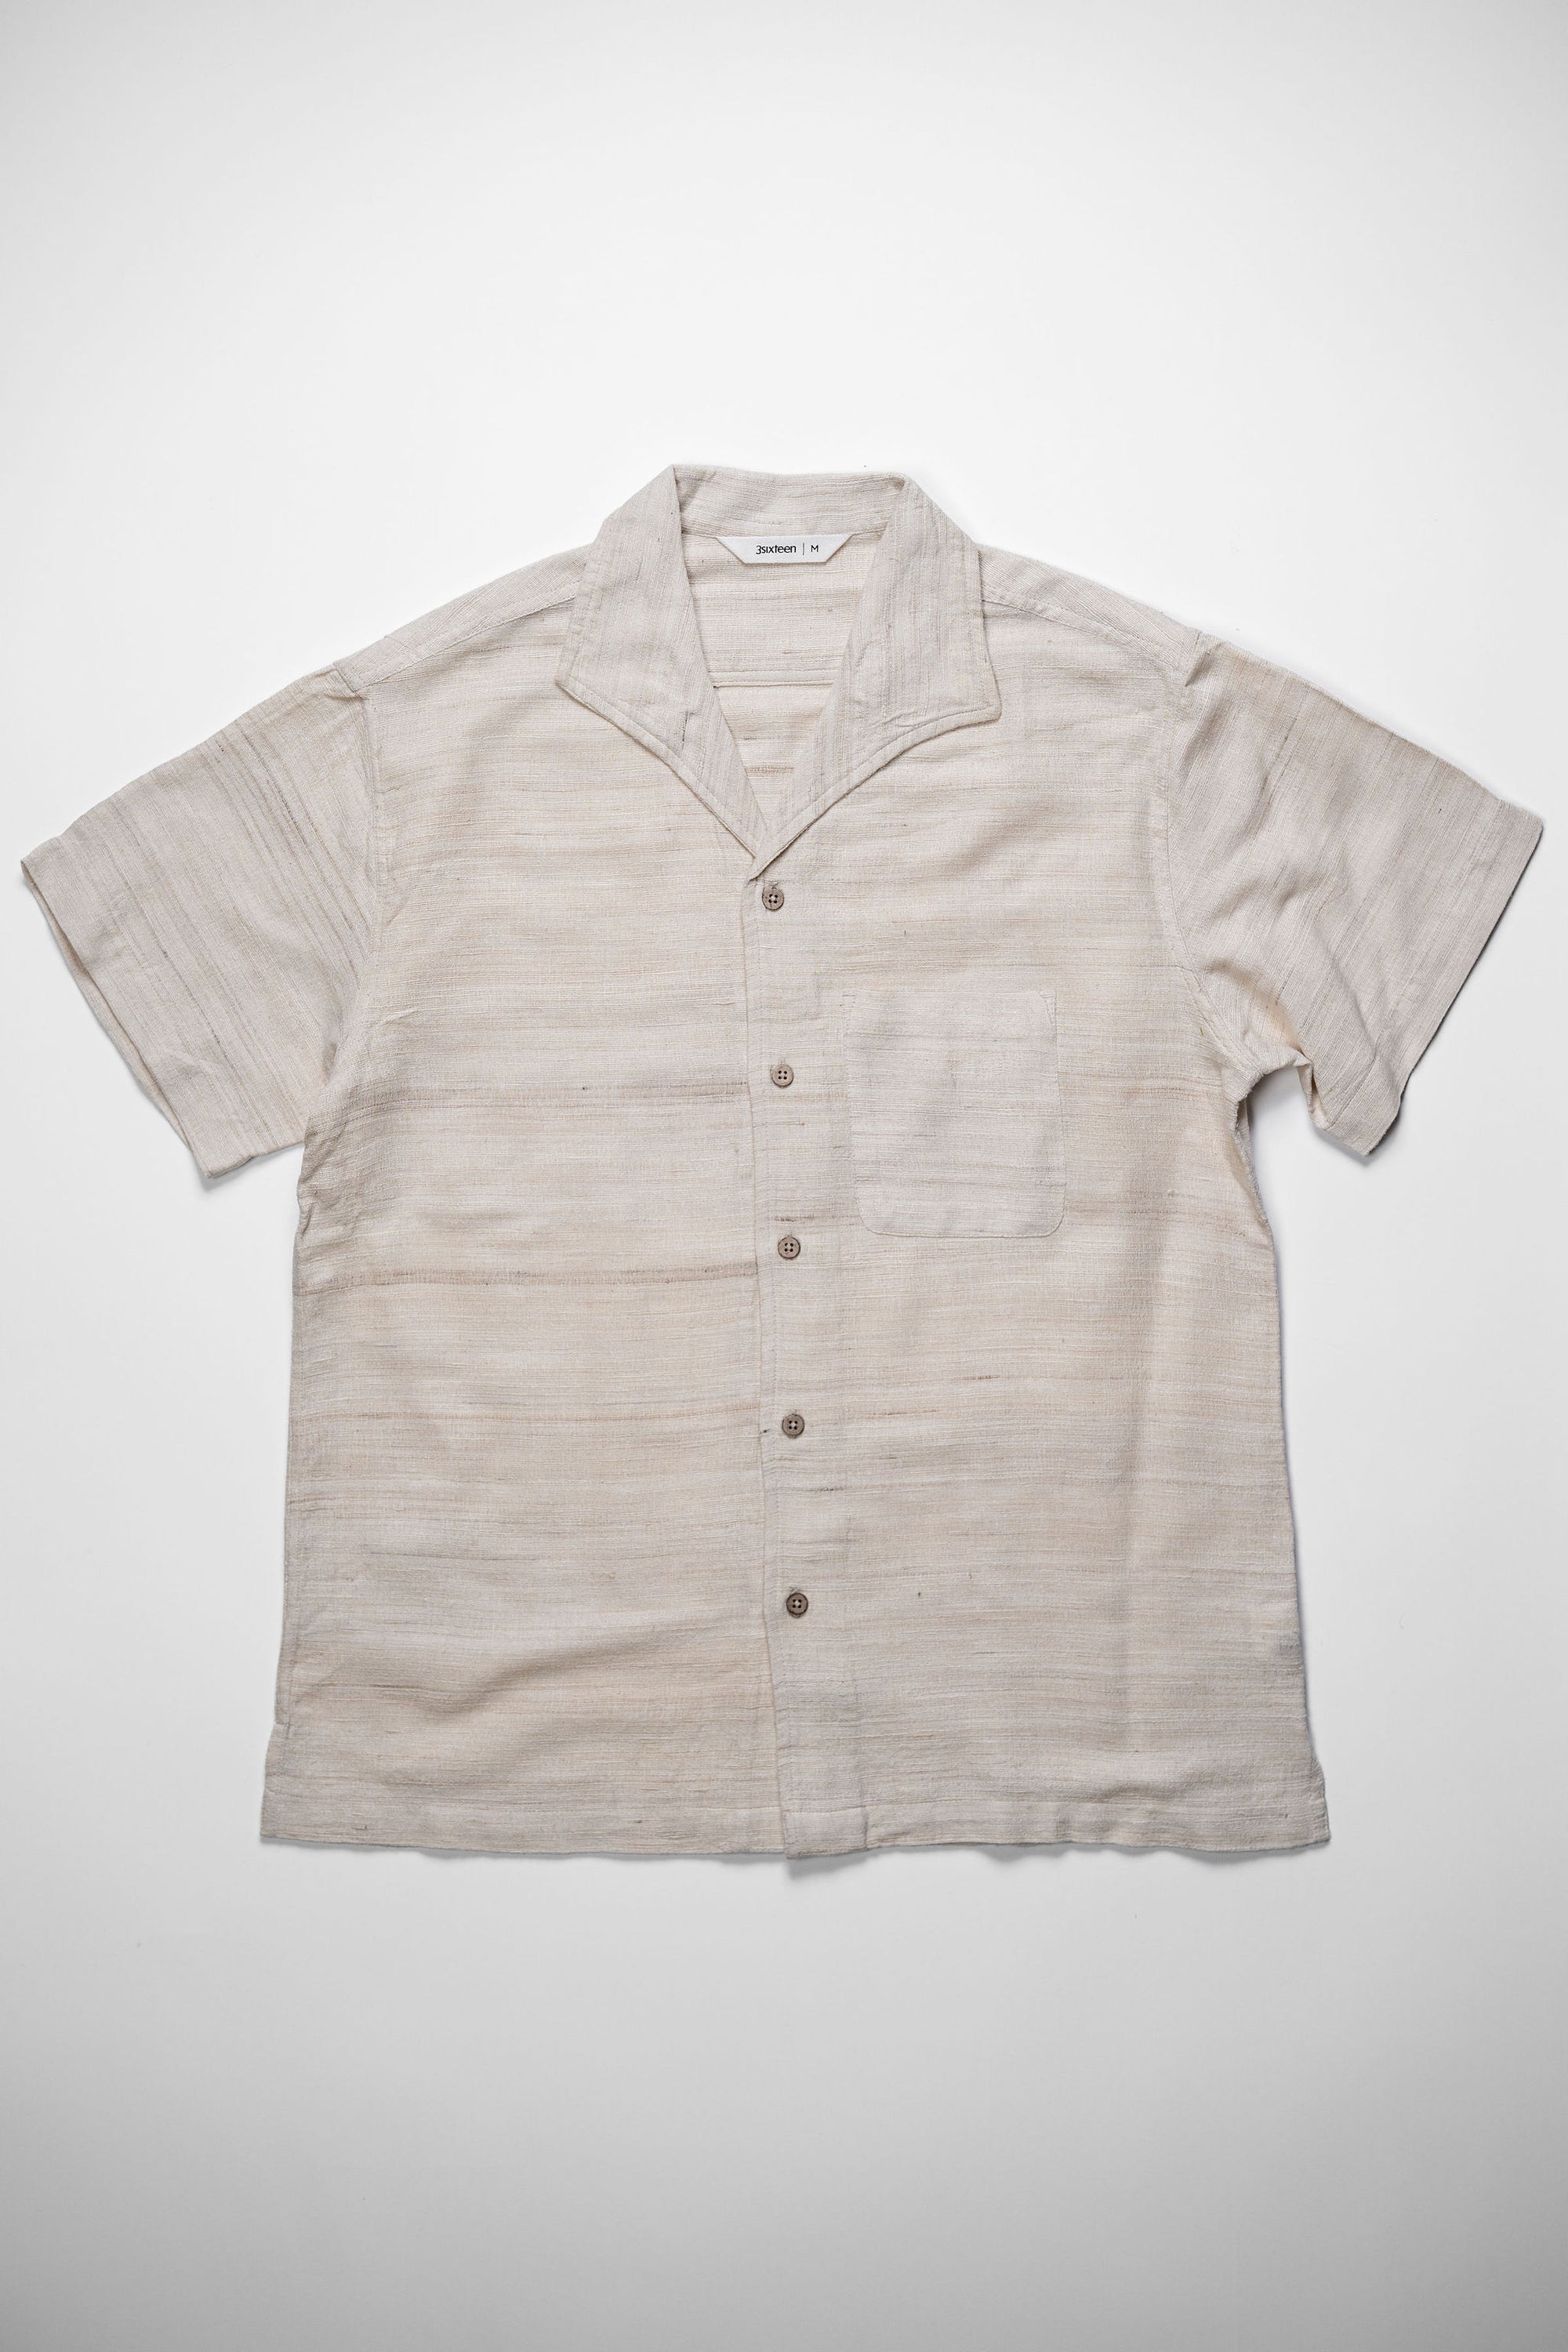 3sixteen Leisure Shirt - Handloom Silk